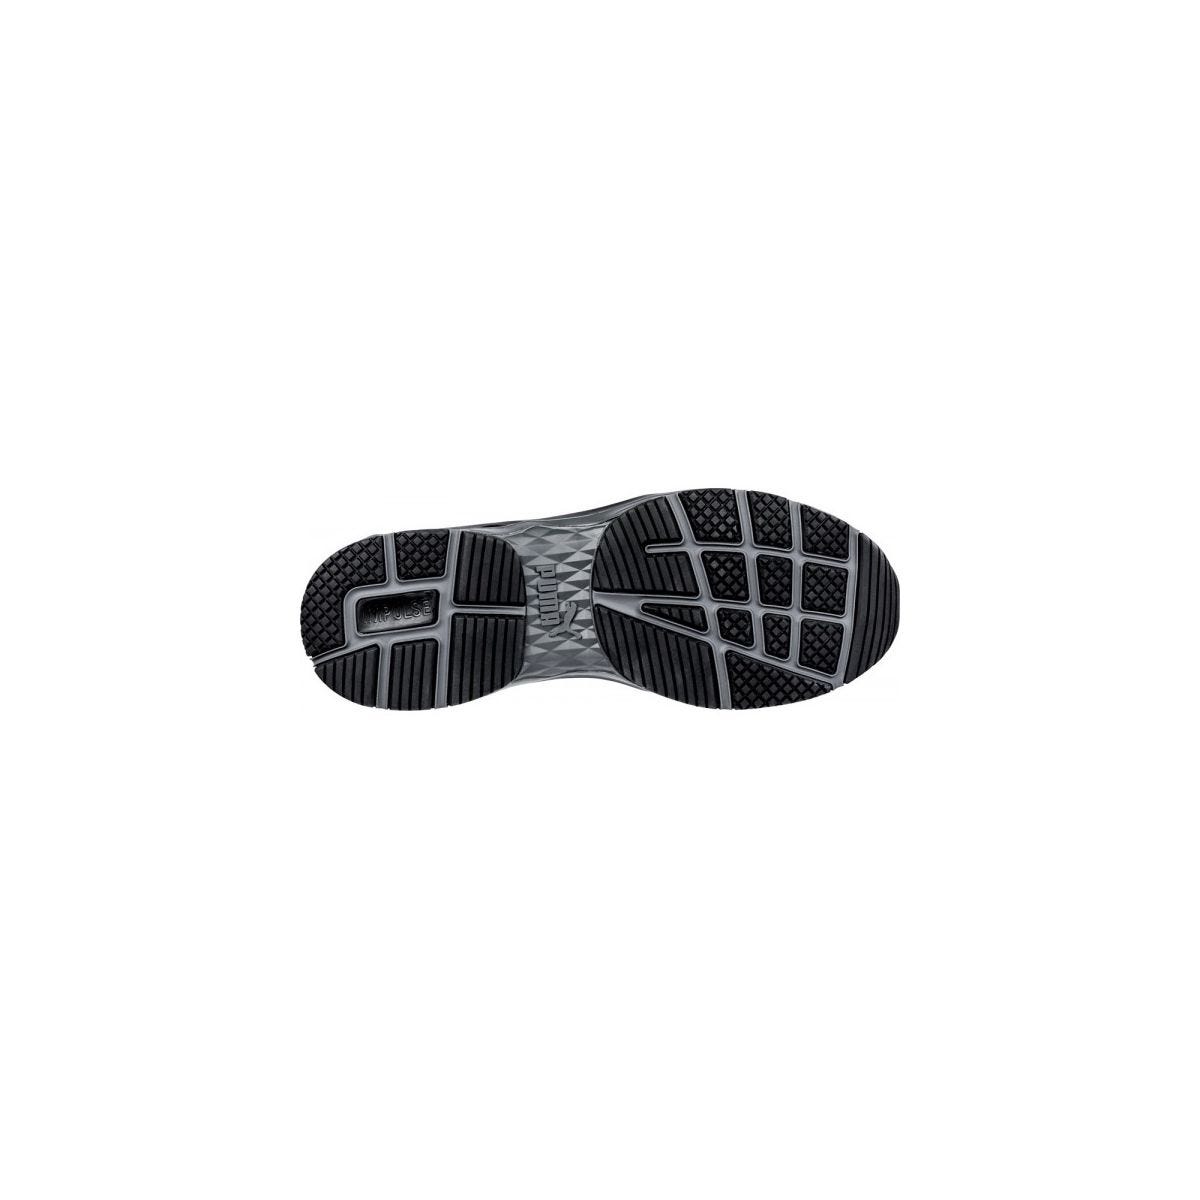 Chaussures de sécurité Velocity 2.0 Noir Low S3 - Puma - Taille 44 4